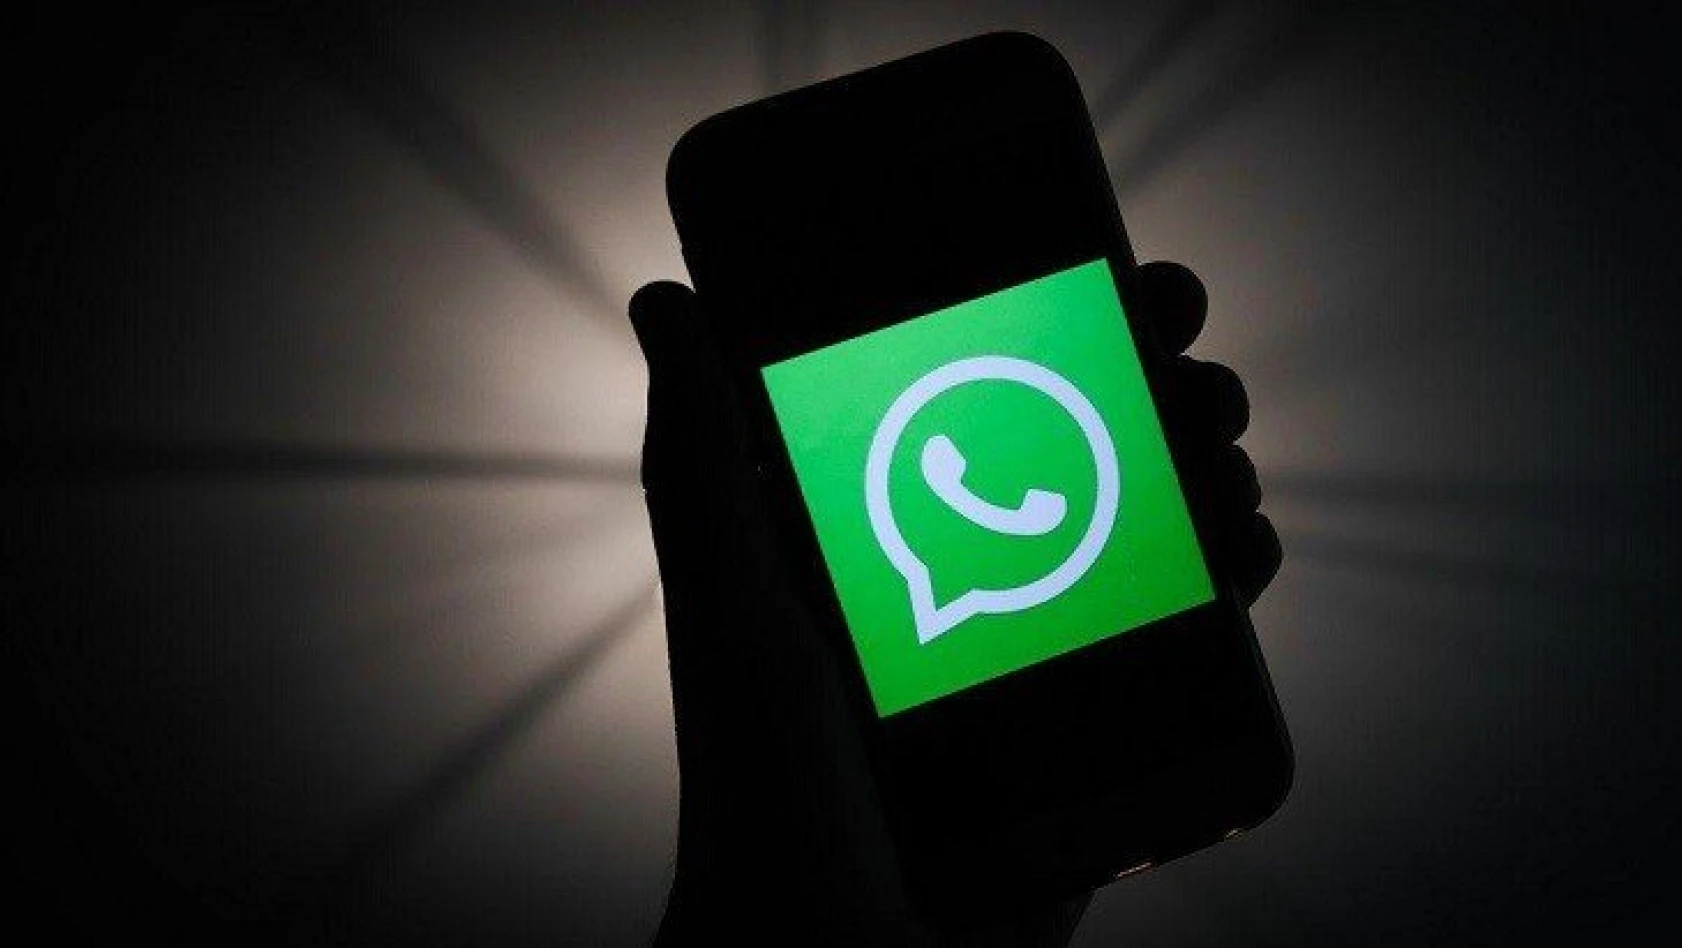 WhatsApp gizlilik ilkesi değişikliğinde geri adım attı